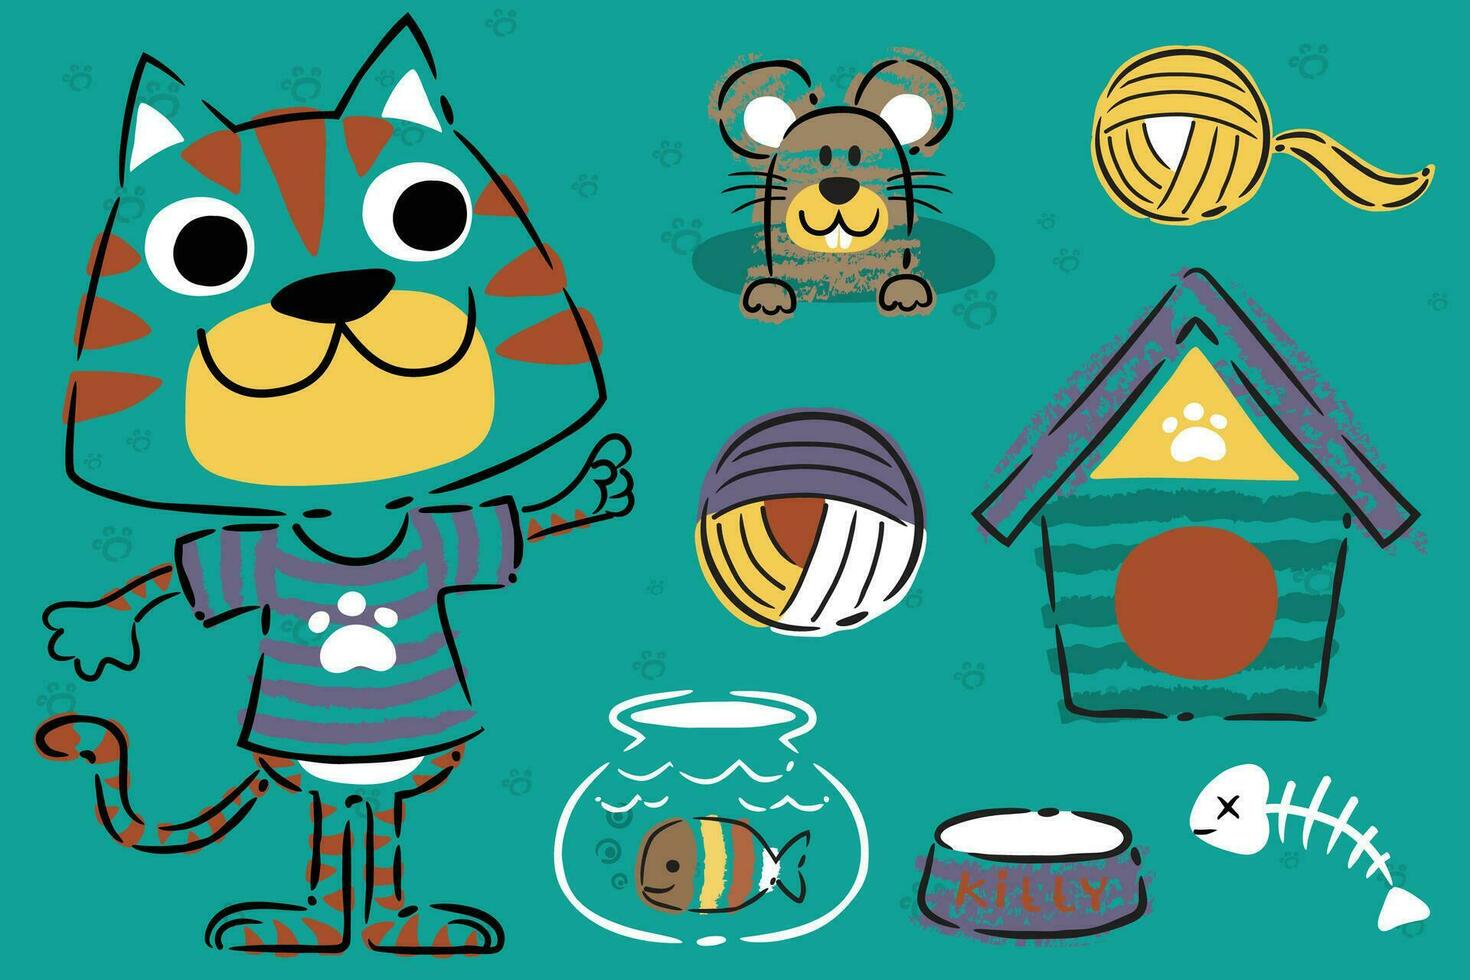 gracioso gato y ratón con juguetes en mano dibujado estilo vector